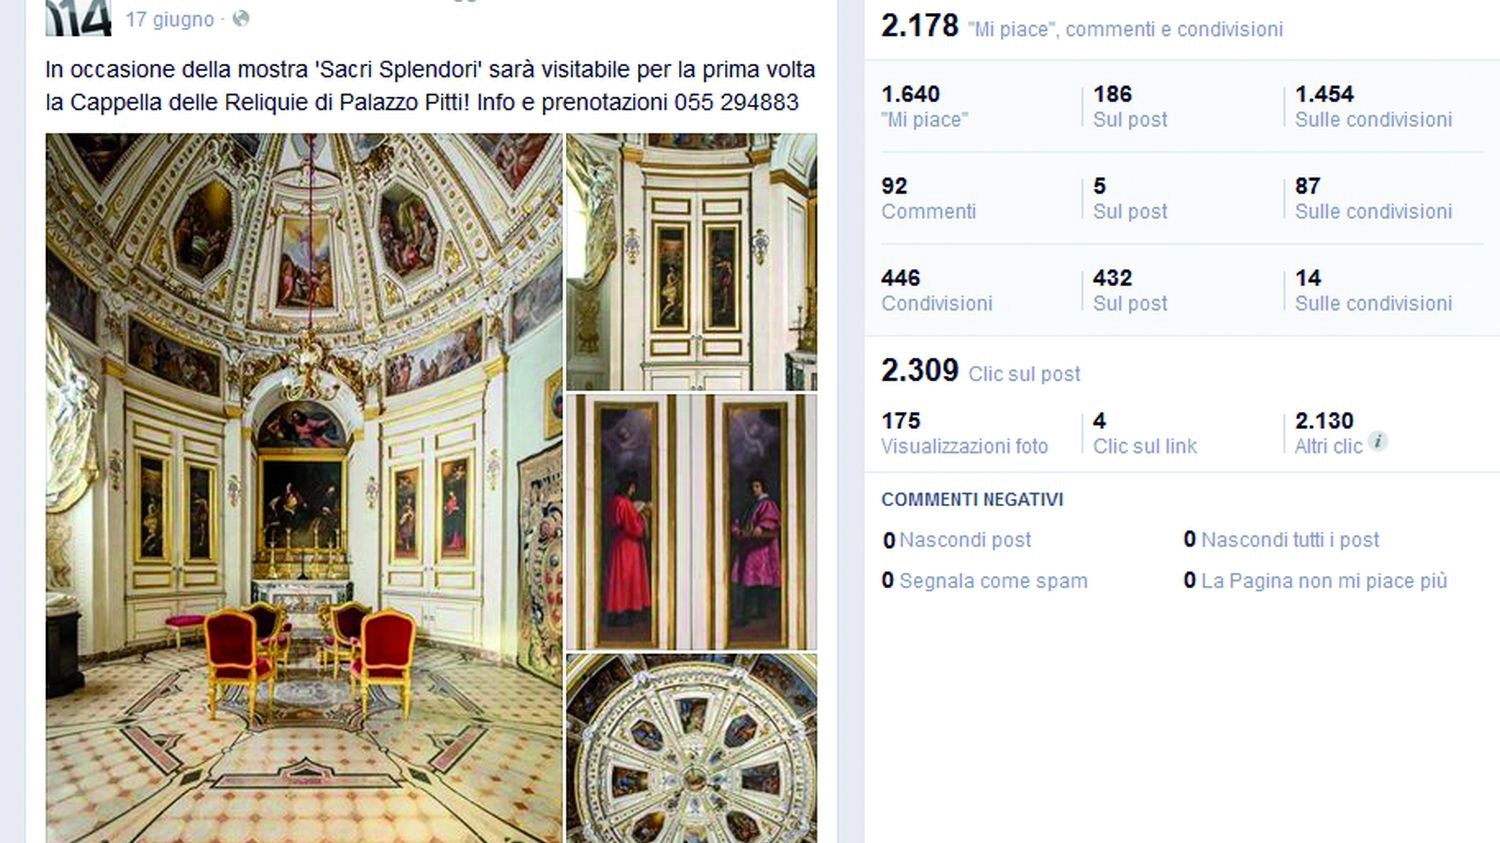 Report del post Facebook alla rassegna “Firenze un anno ad Arte” 